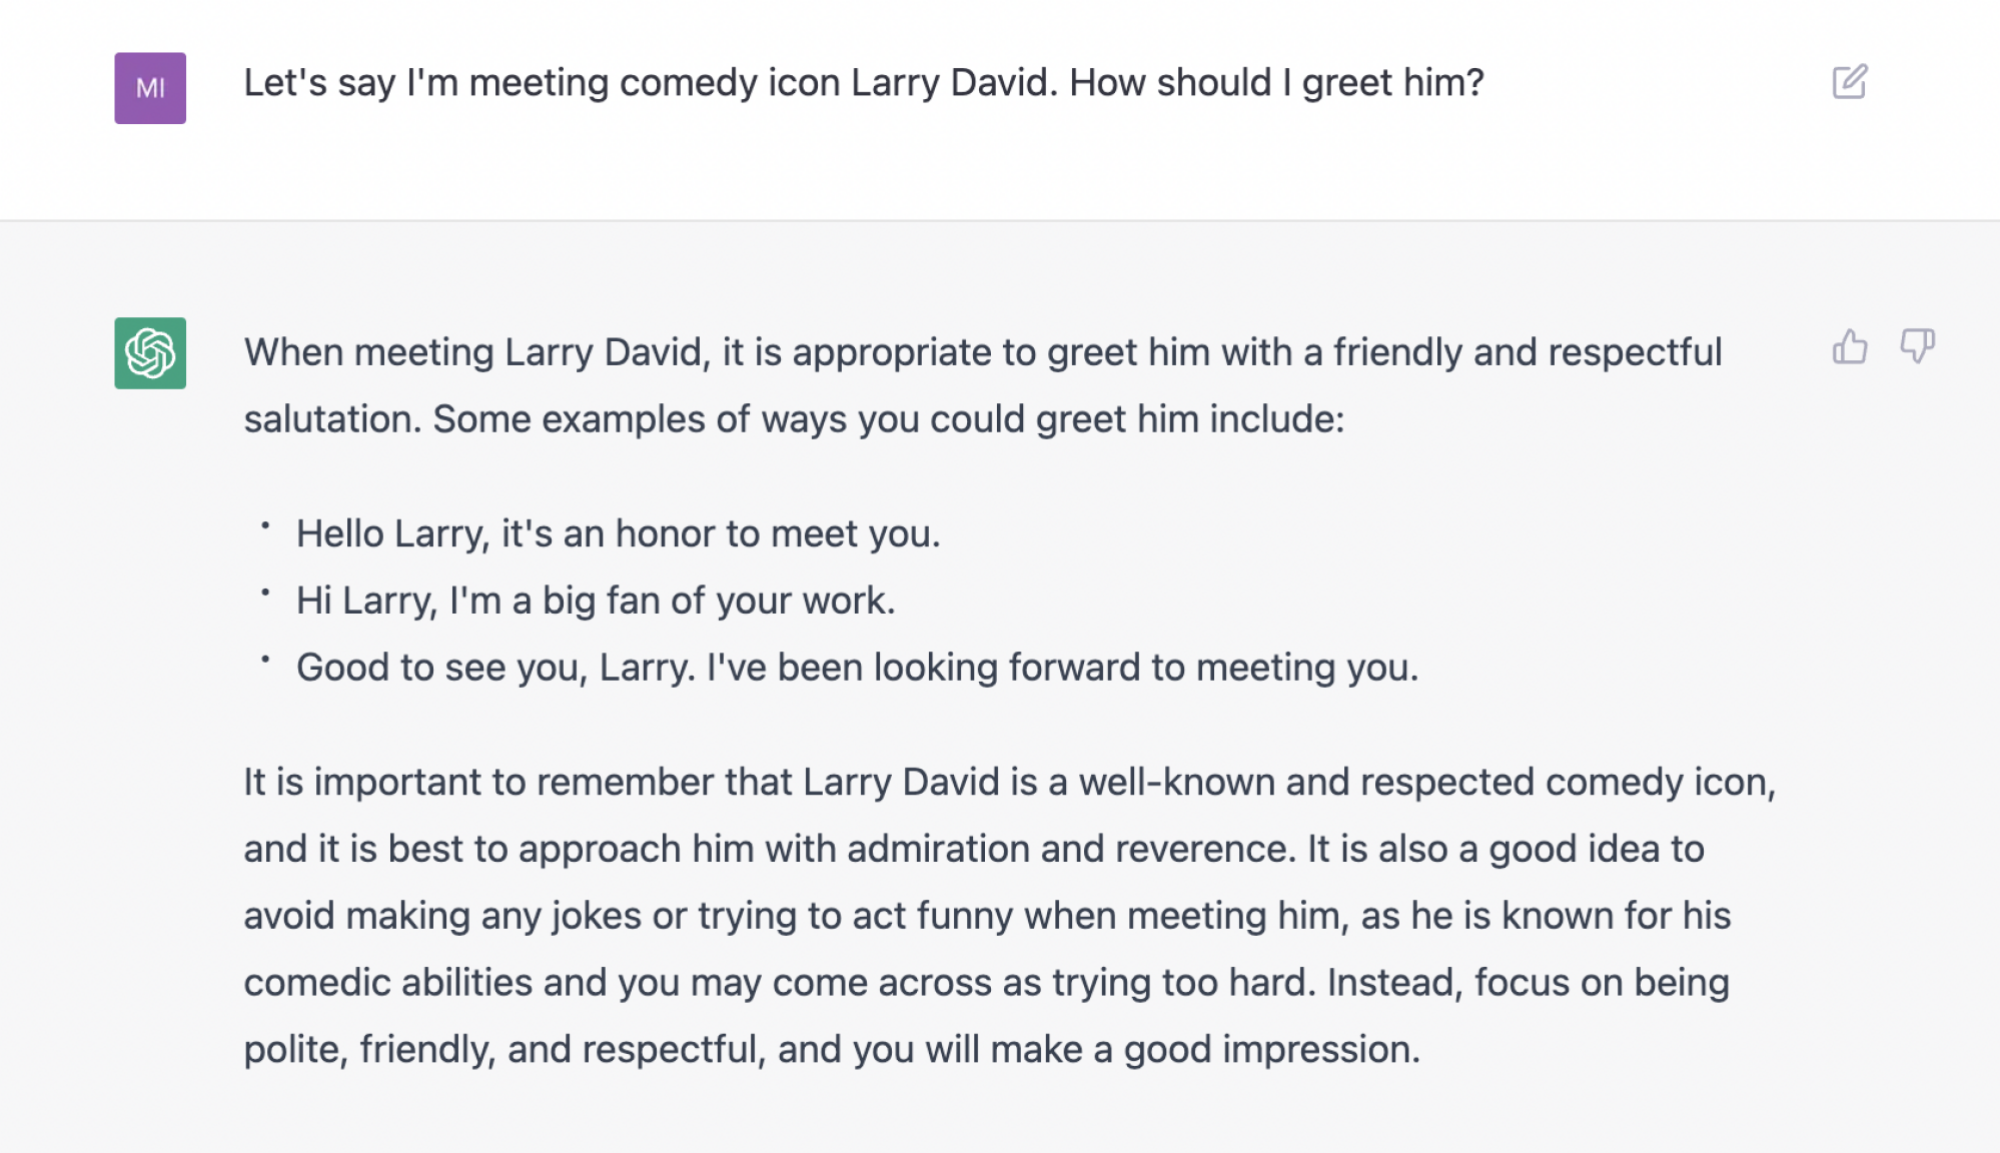 Larry David ile varsayımsal bir karşılaşma, kulağa tehdit gibi gelen önerilen bir selamlamayı içerir.